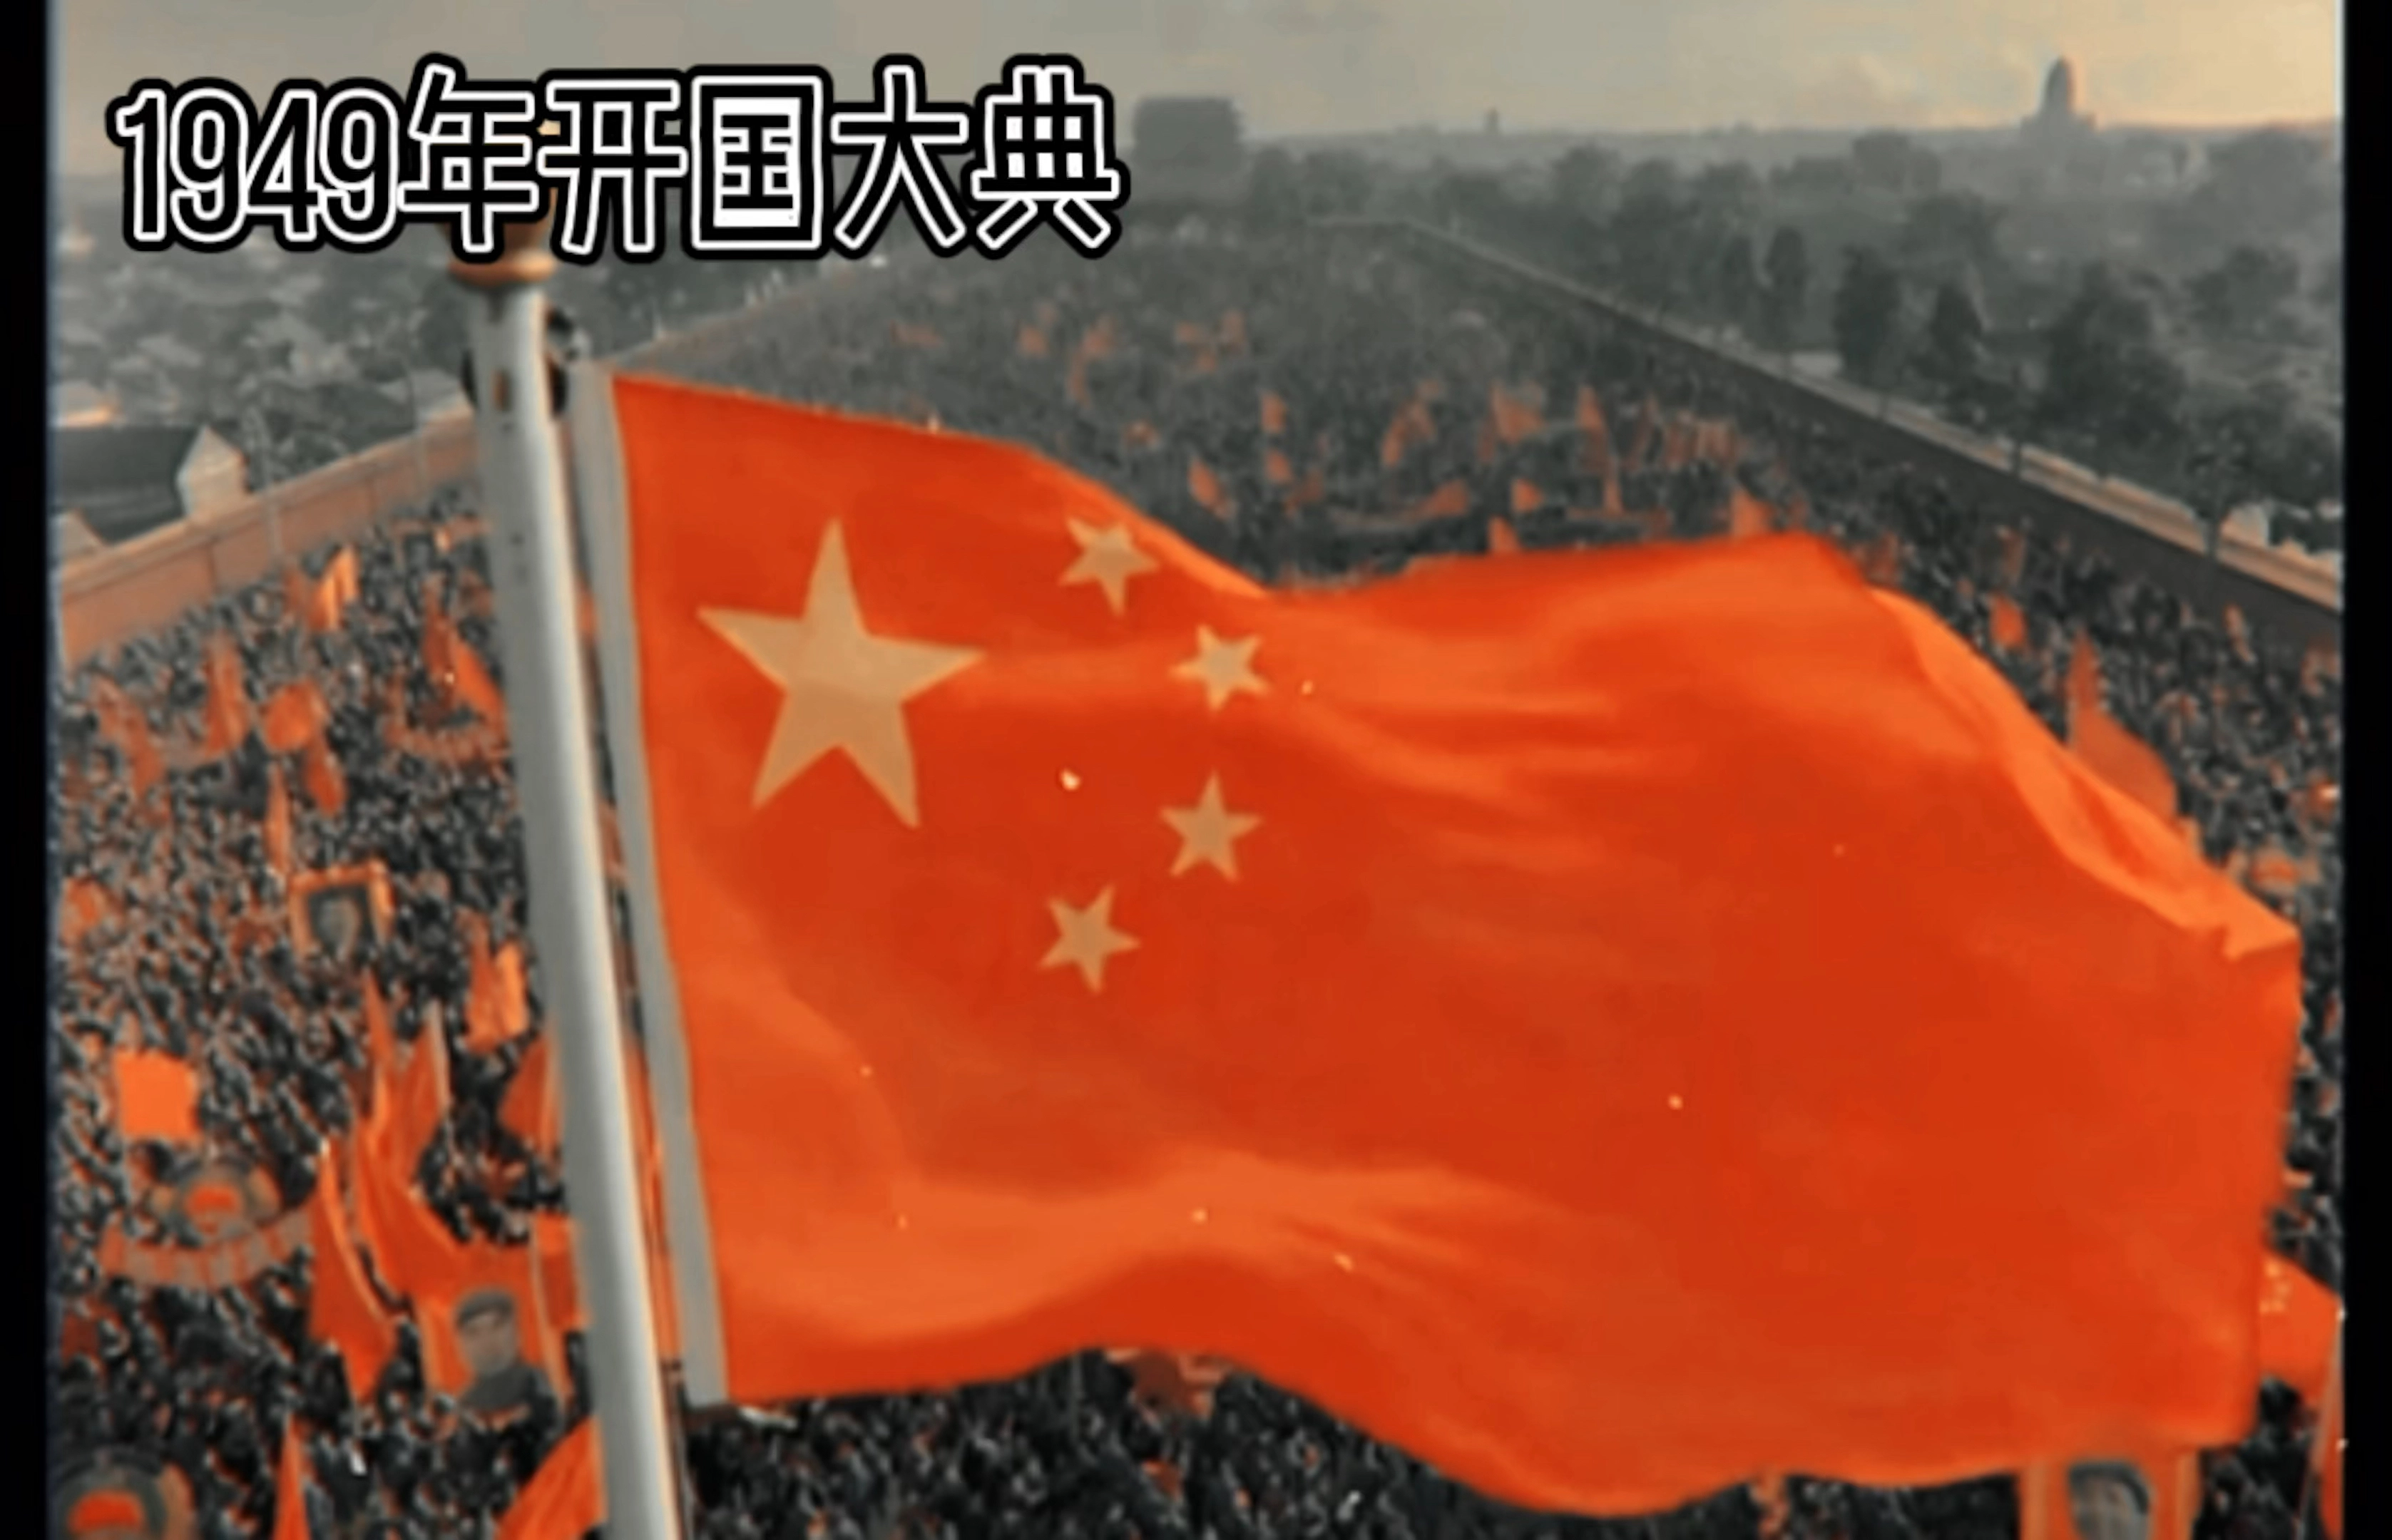 社会主义绝对不会辜负中国！！！